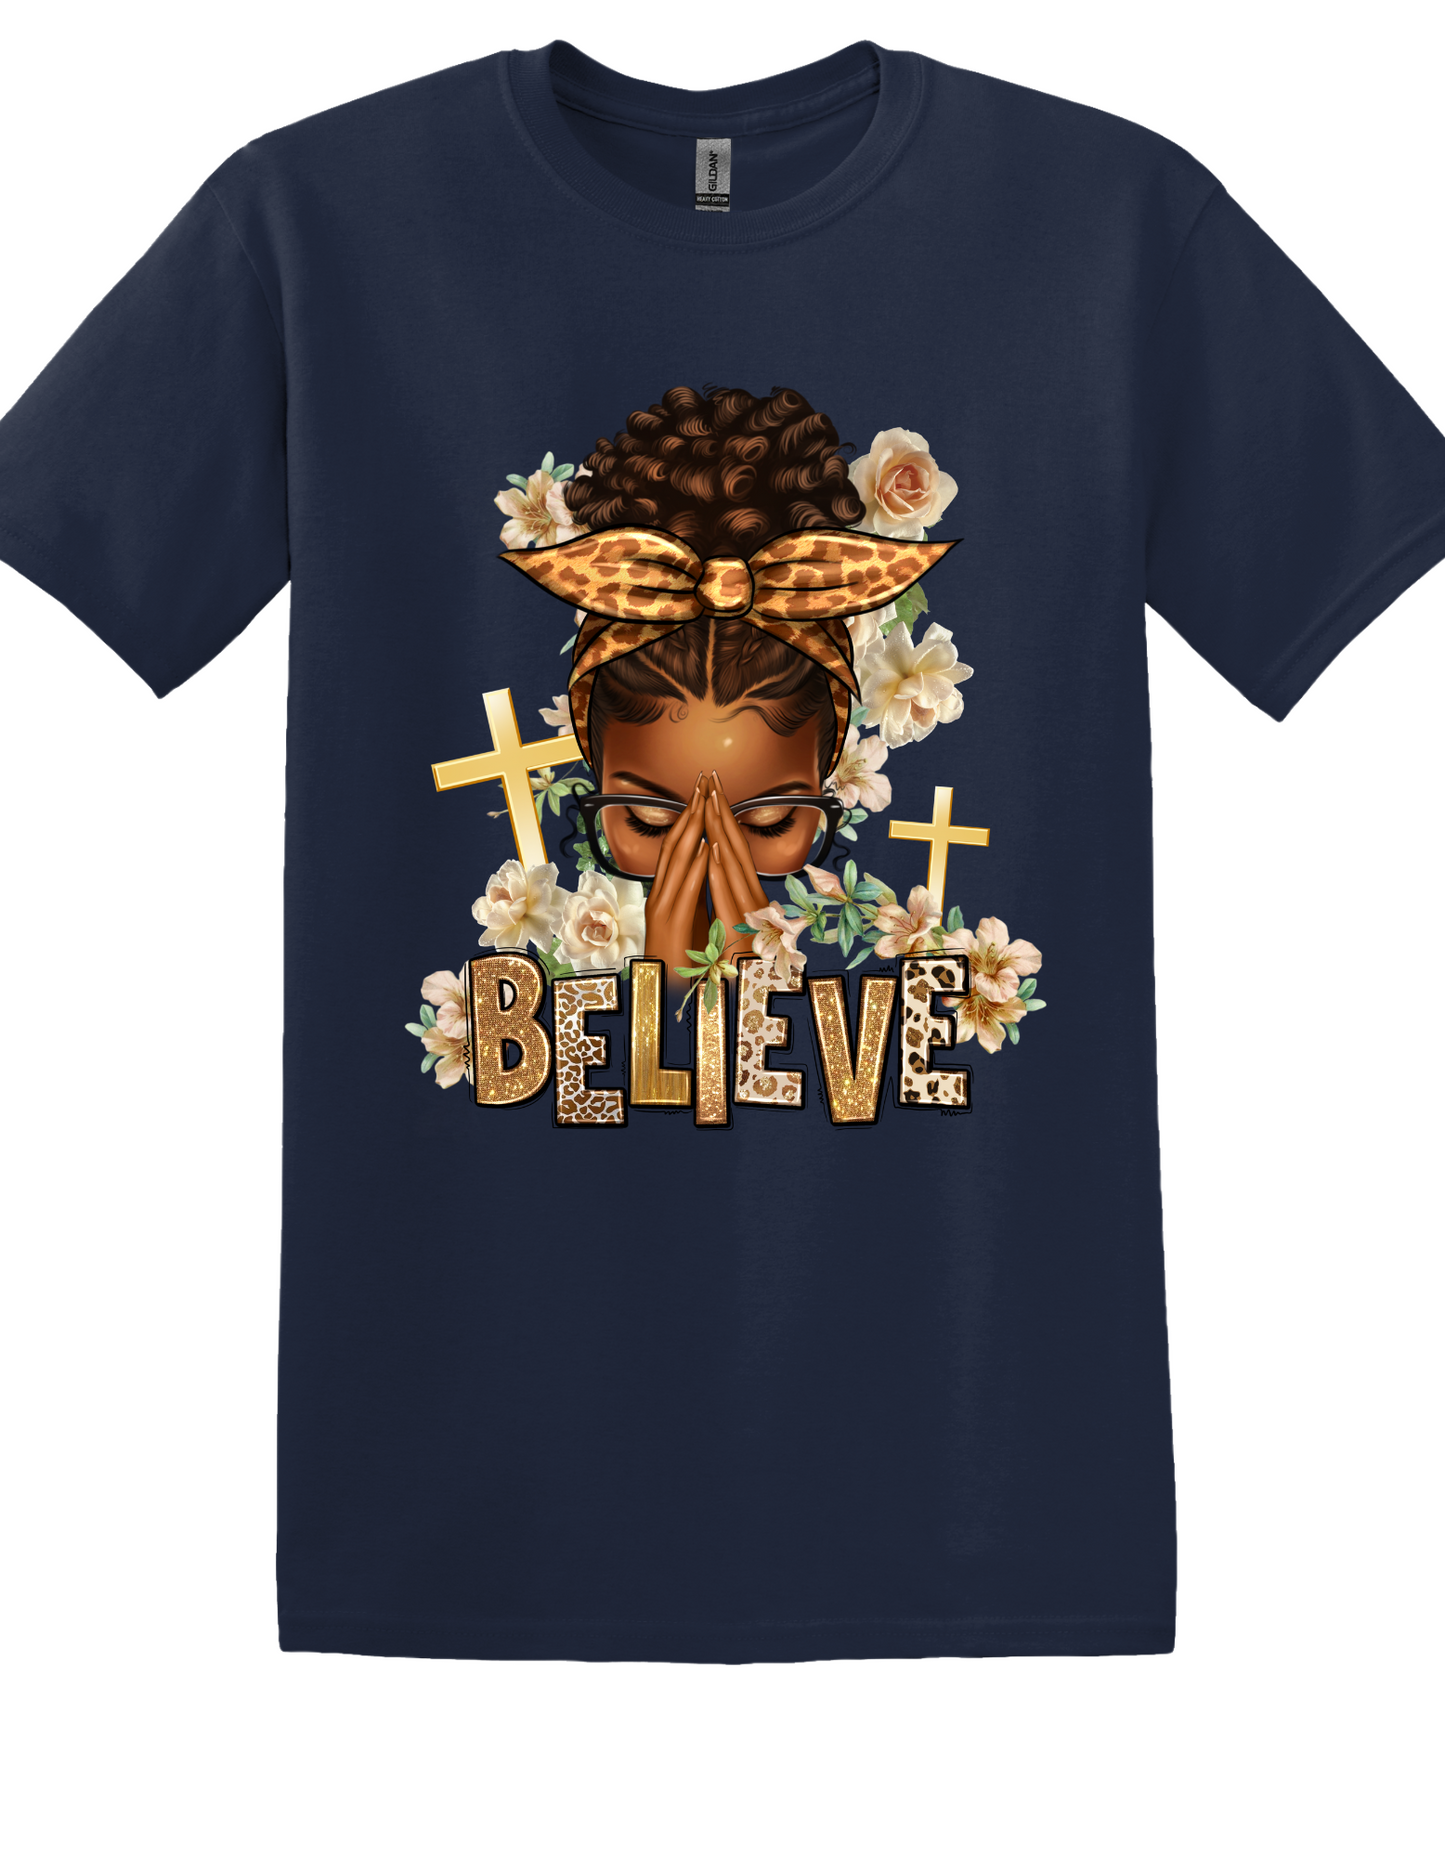 Believe T Shirt